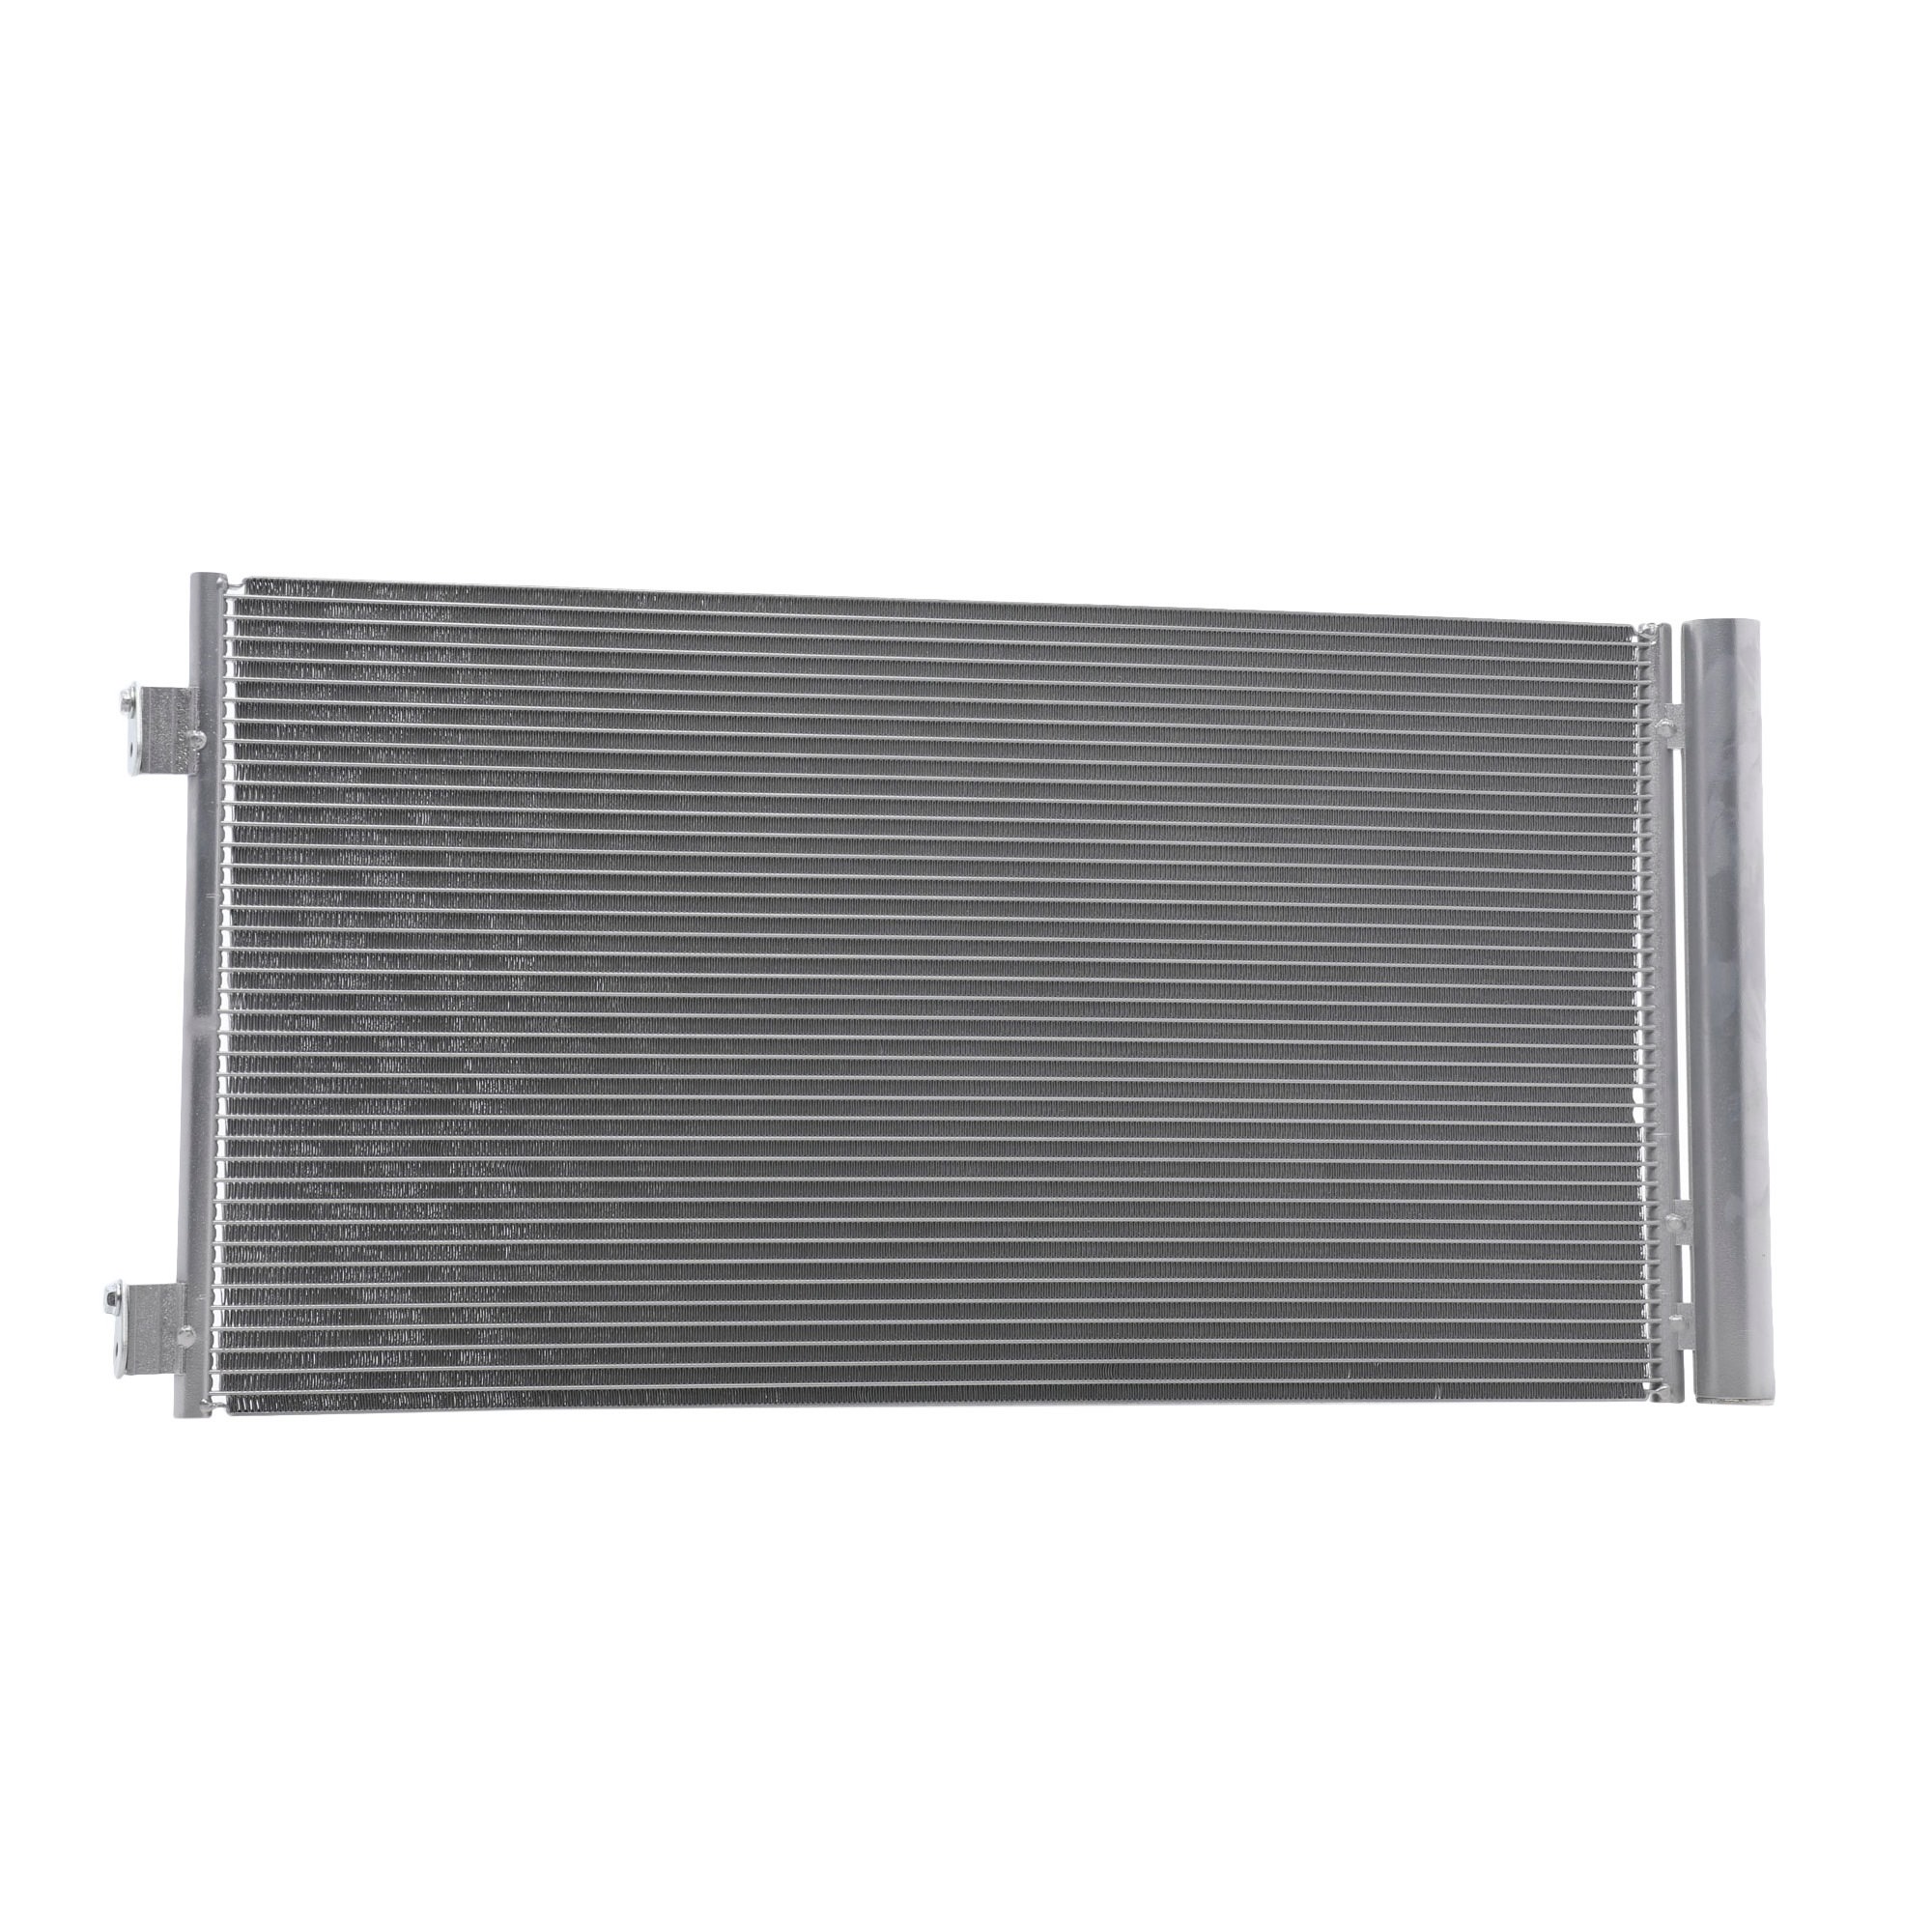 Image of RIDEX Condensatore MINI 448C0244 64539228607,9228607 Radiatore Aria Condizionata,Condensatore Climatizzatore,Condensatore, Climatizzatore